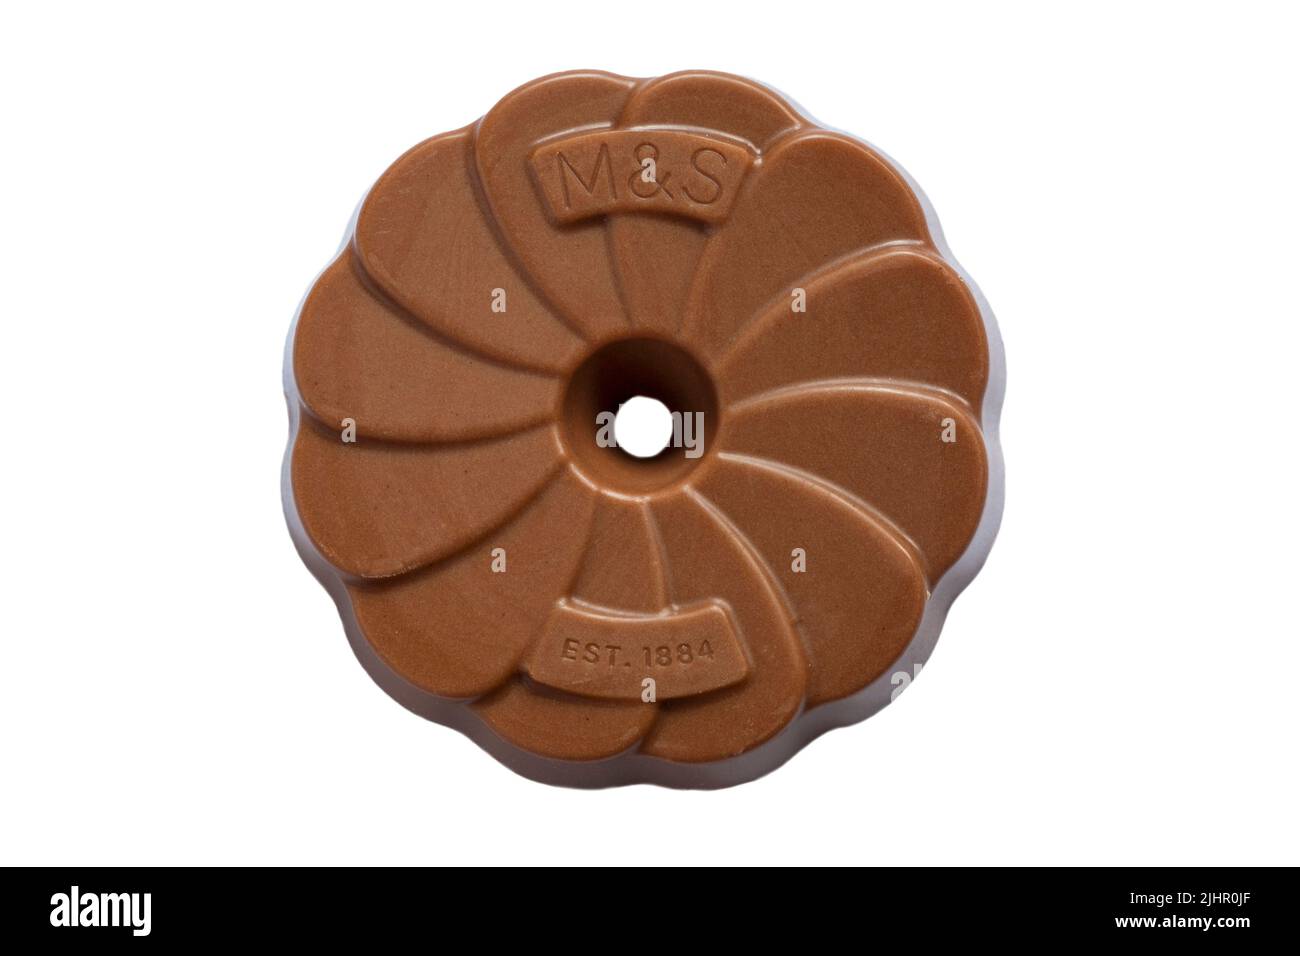 Extrem schokoladige Milchschokolade rundet den Keks von M&S isoliert auf weißem Hintergrund ab Stockfoto